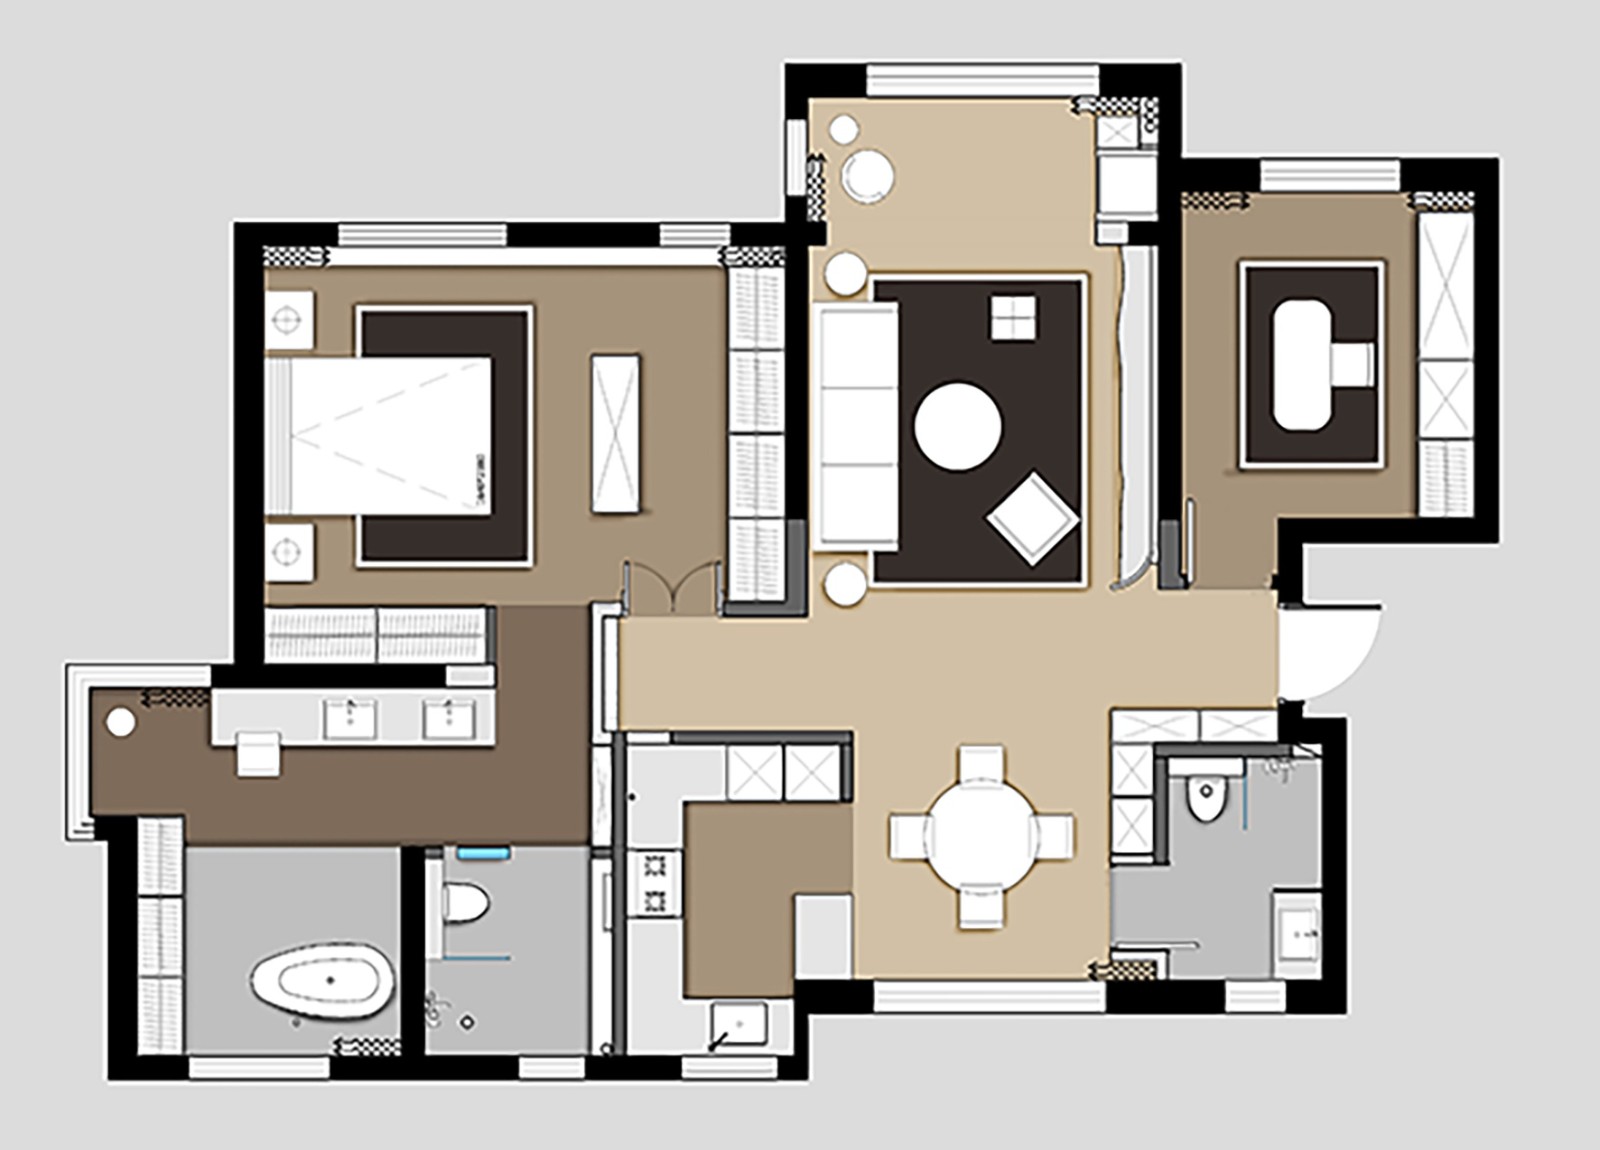 110现代三房装修效果图,简约公寓装修案例效果图-美广网